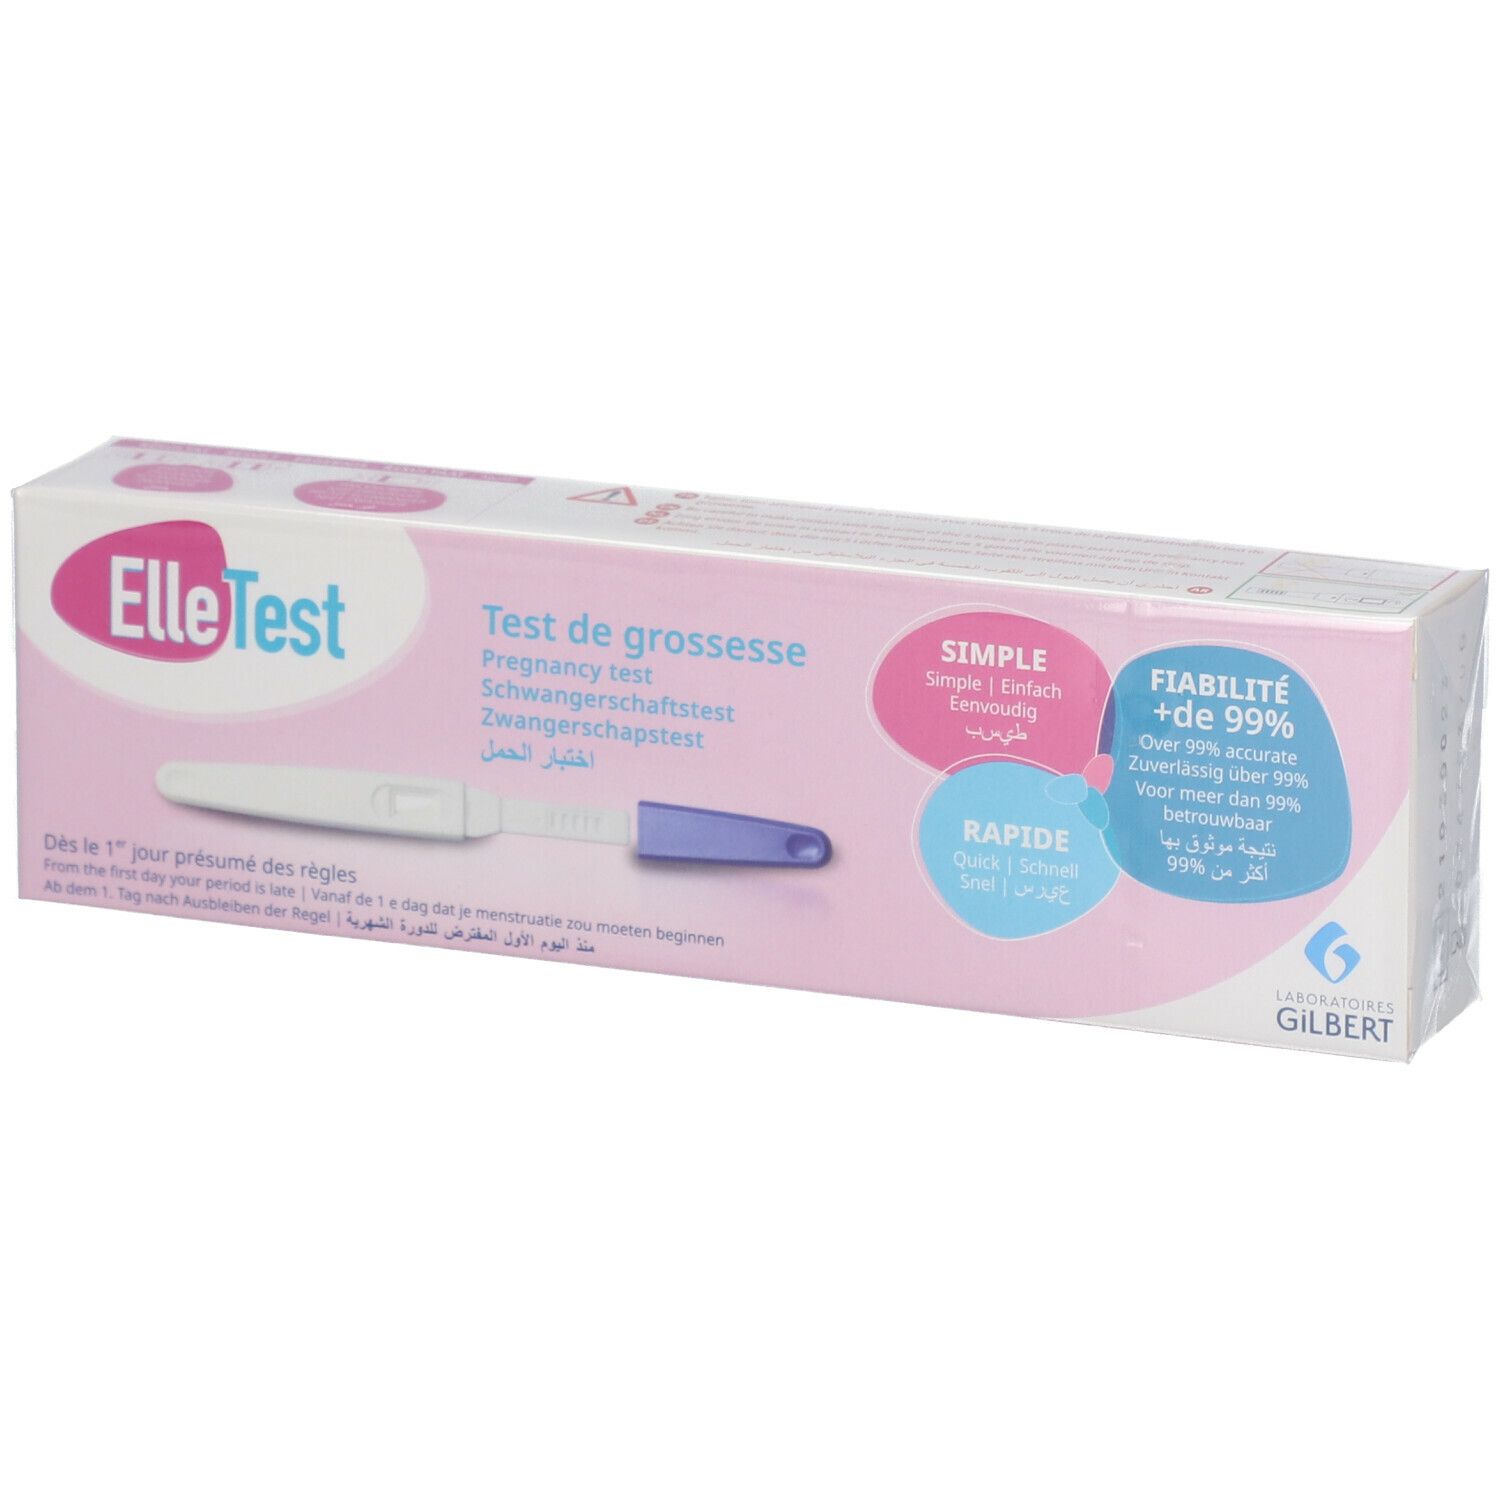 ElleTest Test de Grossesse 1 pc(s) - Redcare Pharmacie